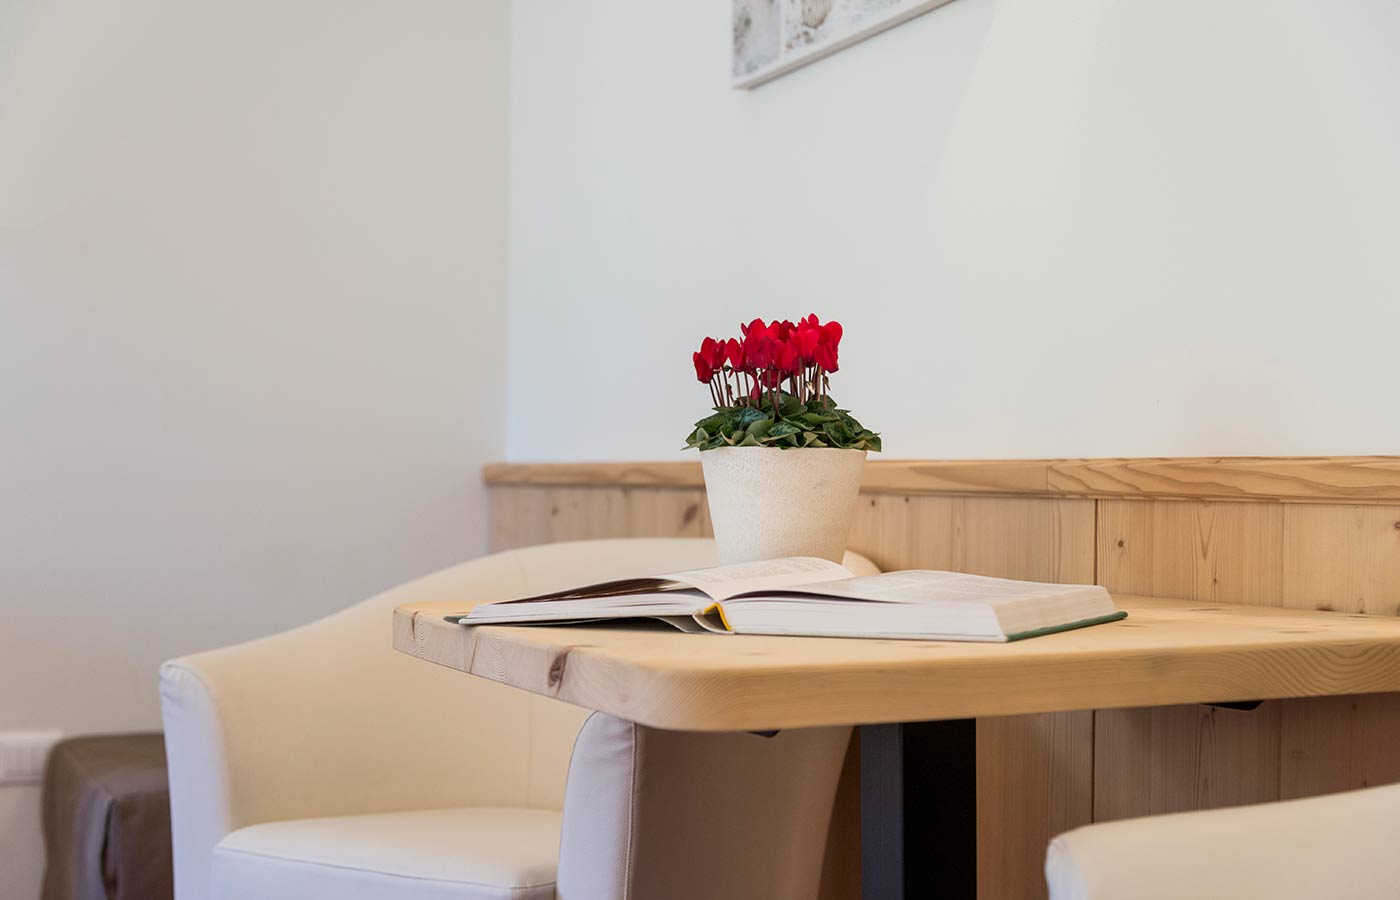 Tavolino in legno con vaso di fiori e libro aperto nella stanza dell'Hotel Waldheim